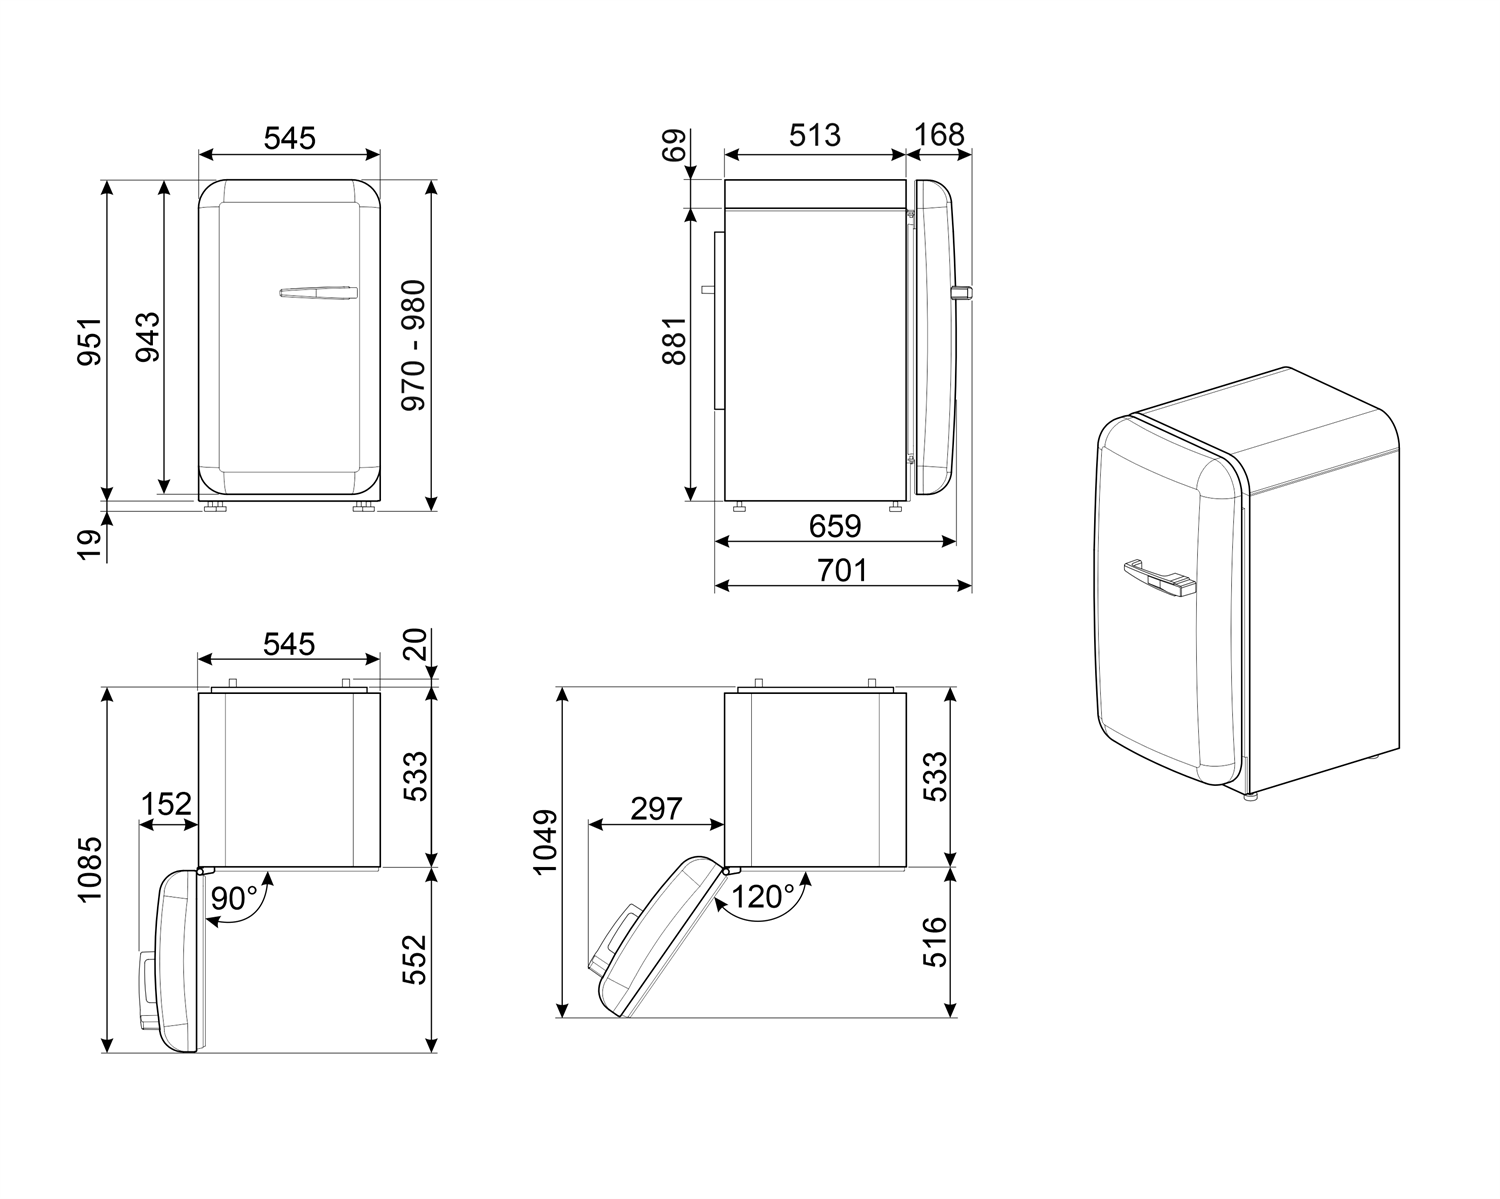 Maattekening SMEG koelkast tafelmodel rood FAB10HLRD5